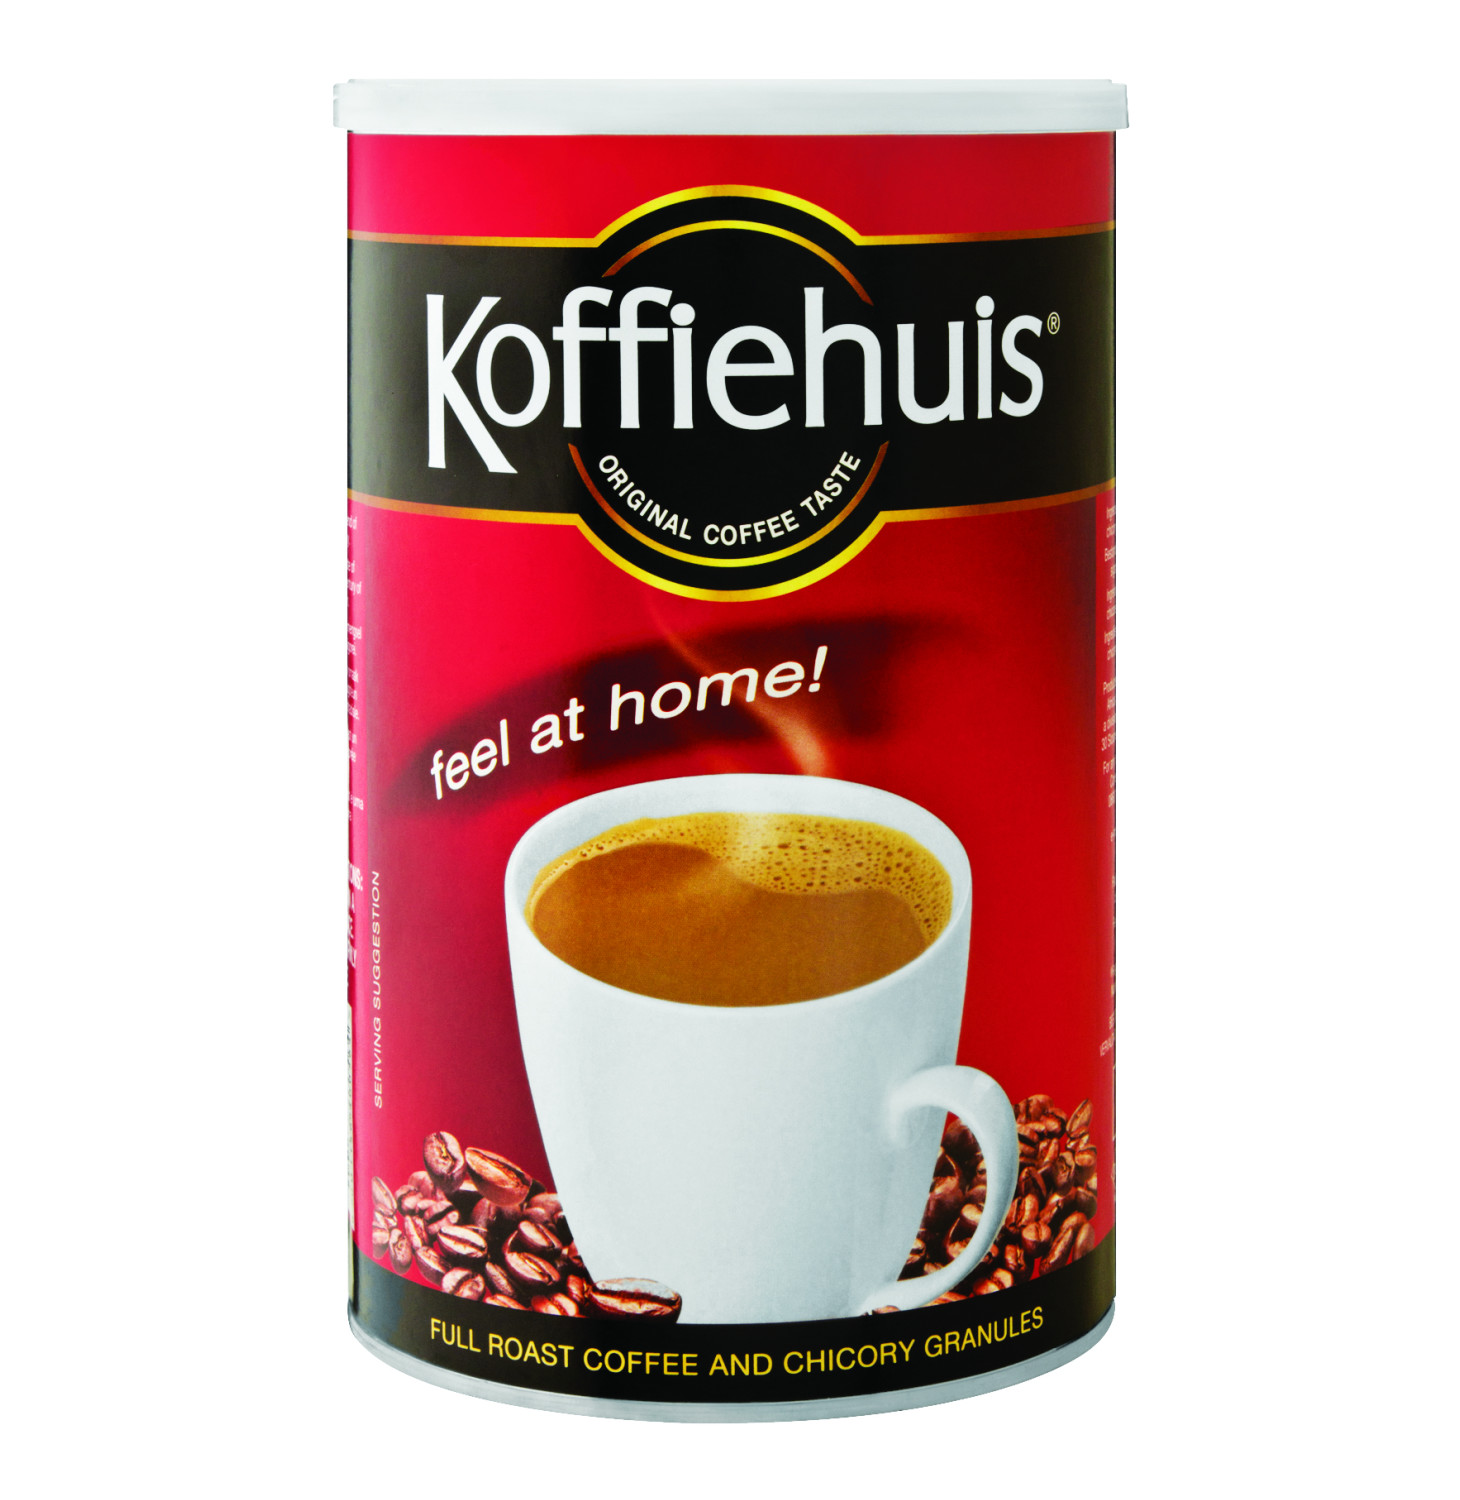 Koffiehuis Coffee 750g - Full Roast